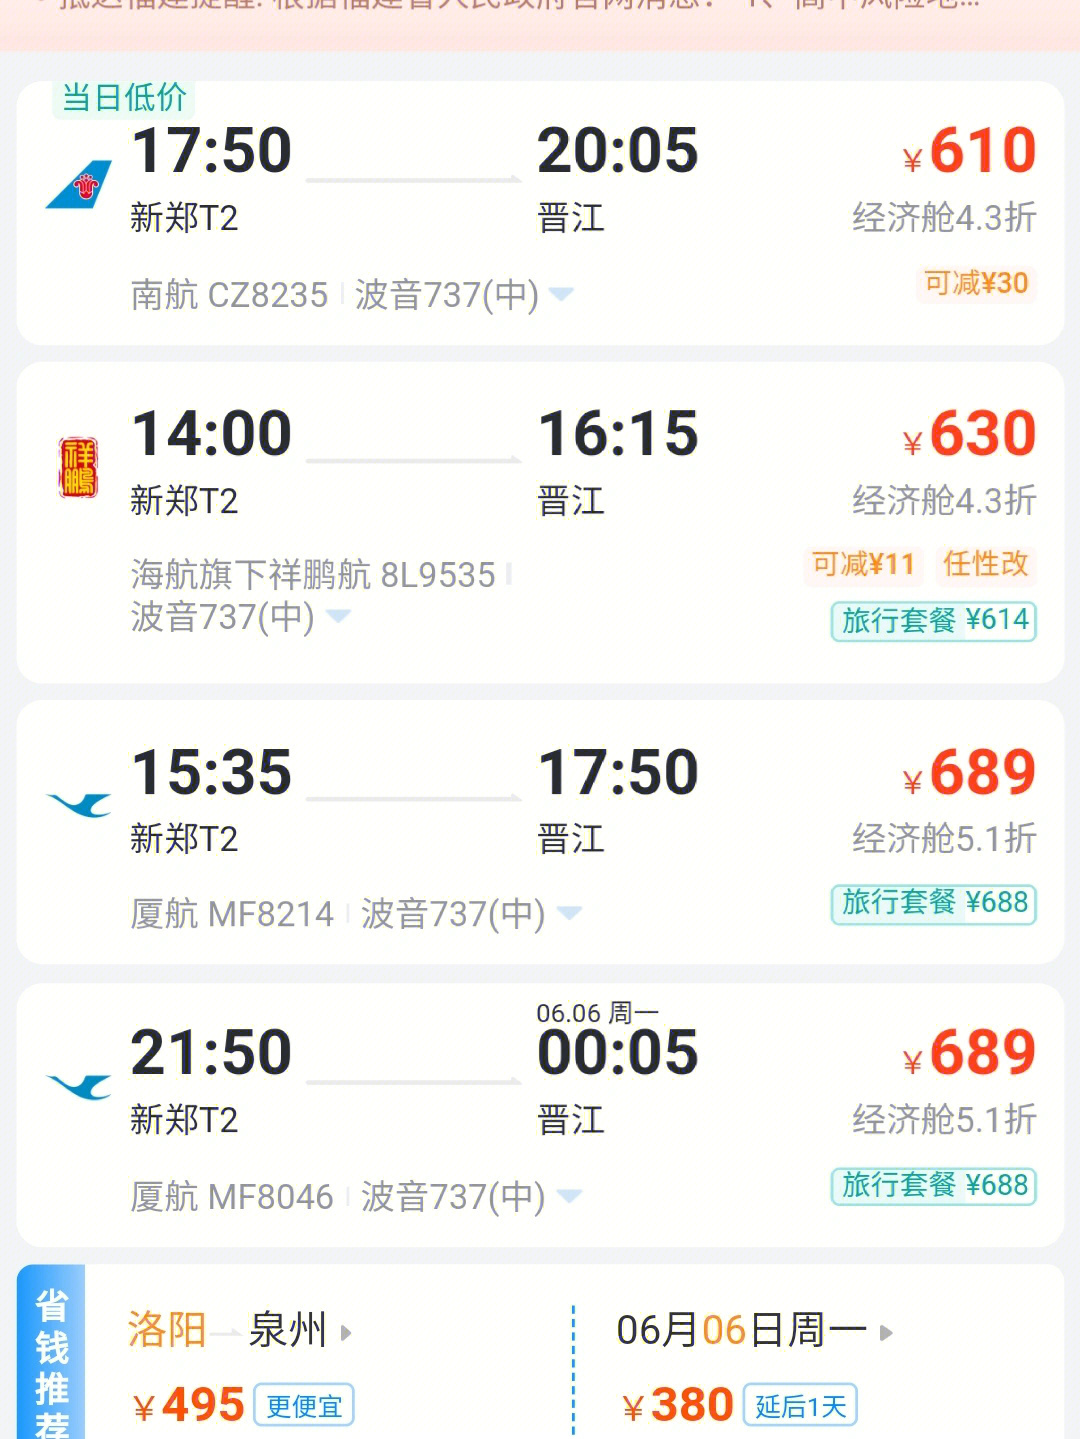 到底是要坐飞机直接降落晋江机场67还是坐动车,到福州吃碗肉燕,逛逛